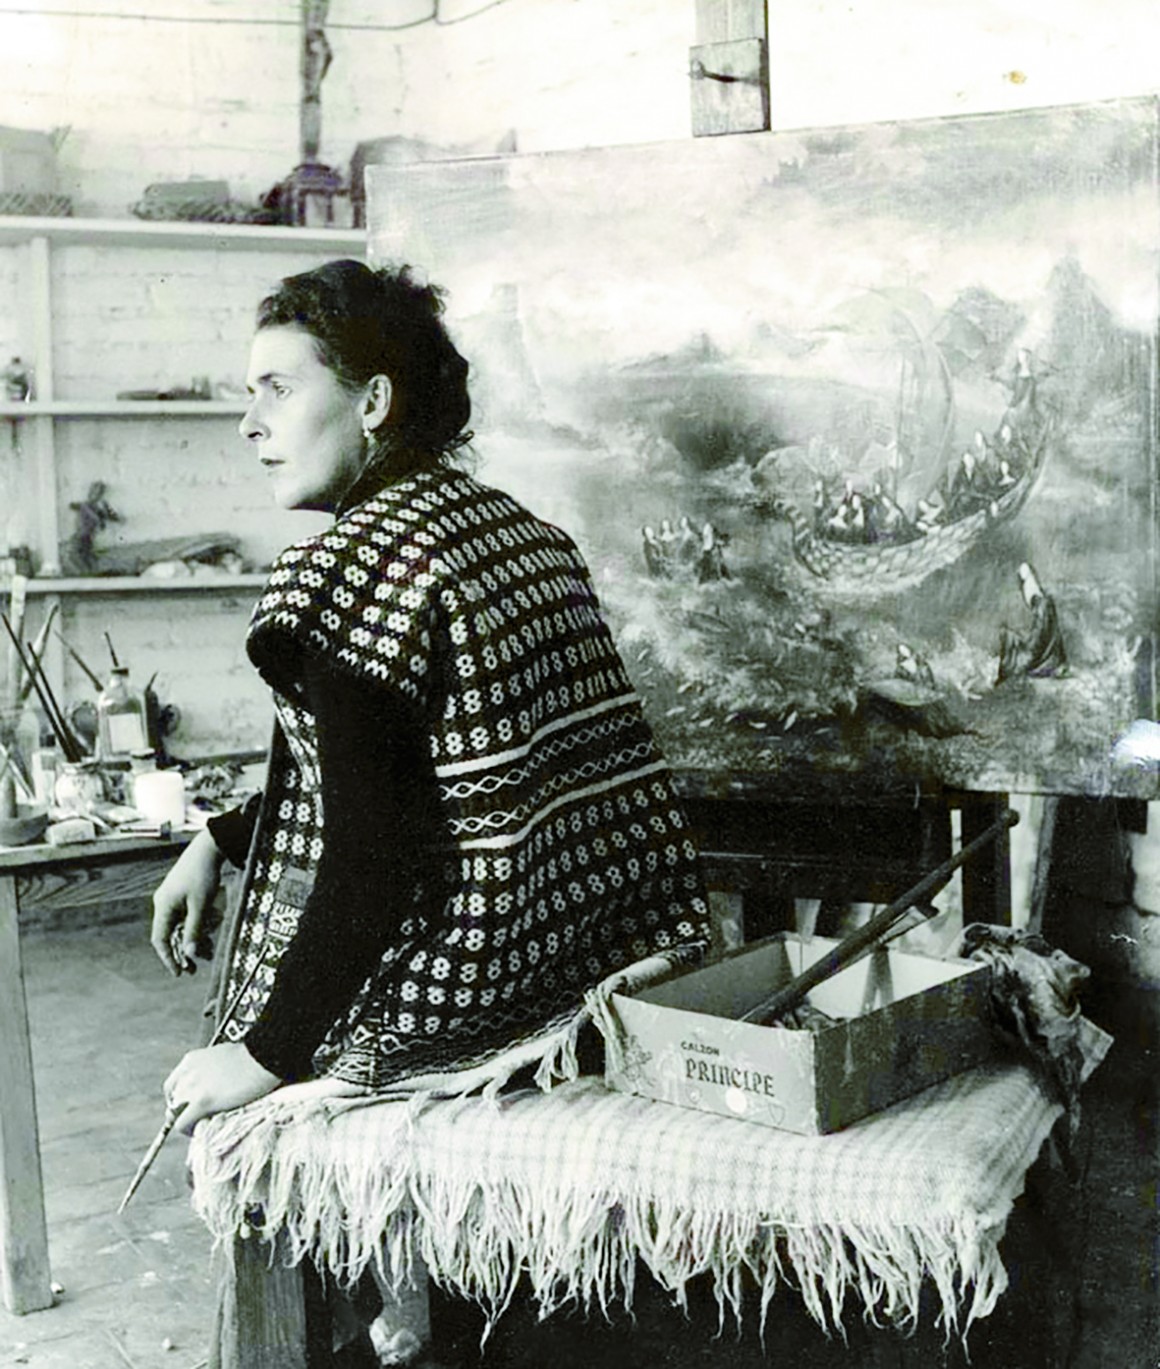 MÉXICO, D.F., 06ABRIL2015.- Hoy se cumple el 98 aniversario del natalicio de Leonora Carrington, “La novia del viento”, quien en 1963 tuvo el encargo de llevar a cabo un mural para el Museo Nacional de Antropología: “El mundo mágico de los mayas”. FOTO: ARCHIVO /CONACULTA /CUARTOSCURO.COM